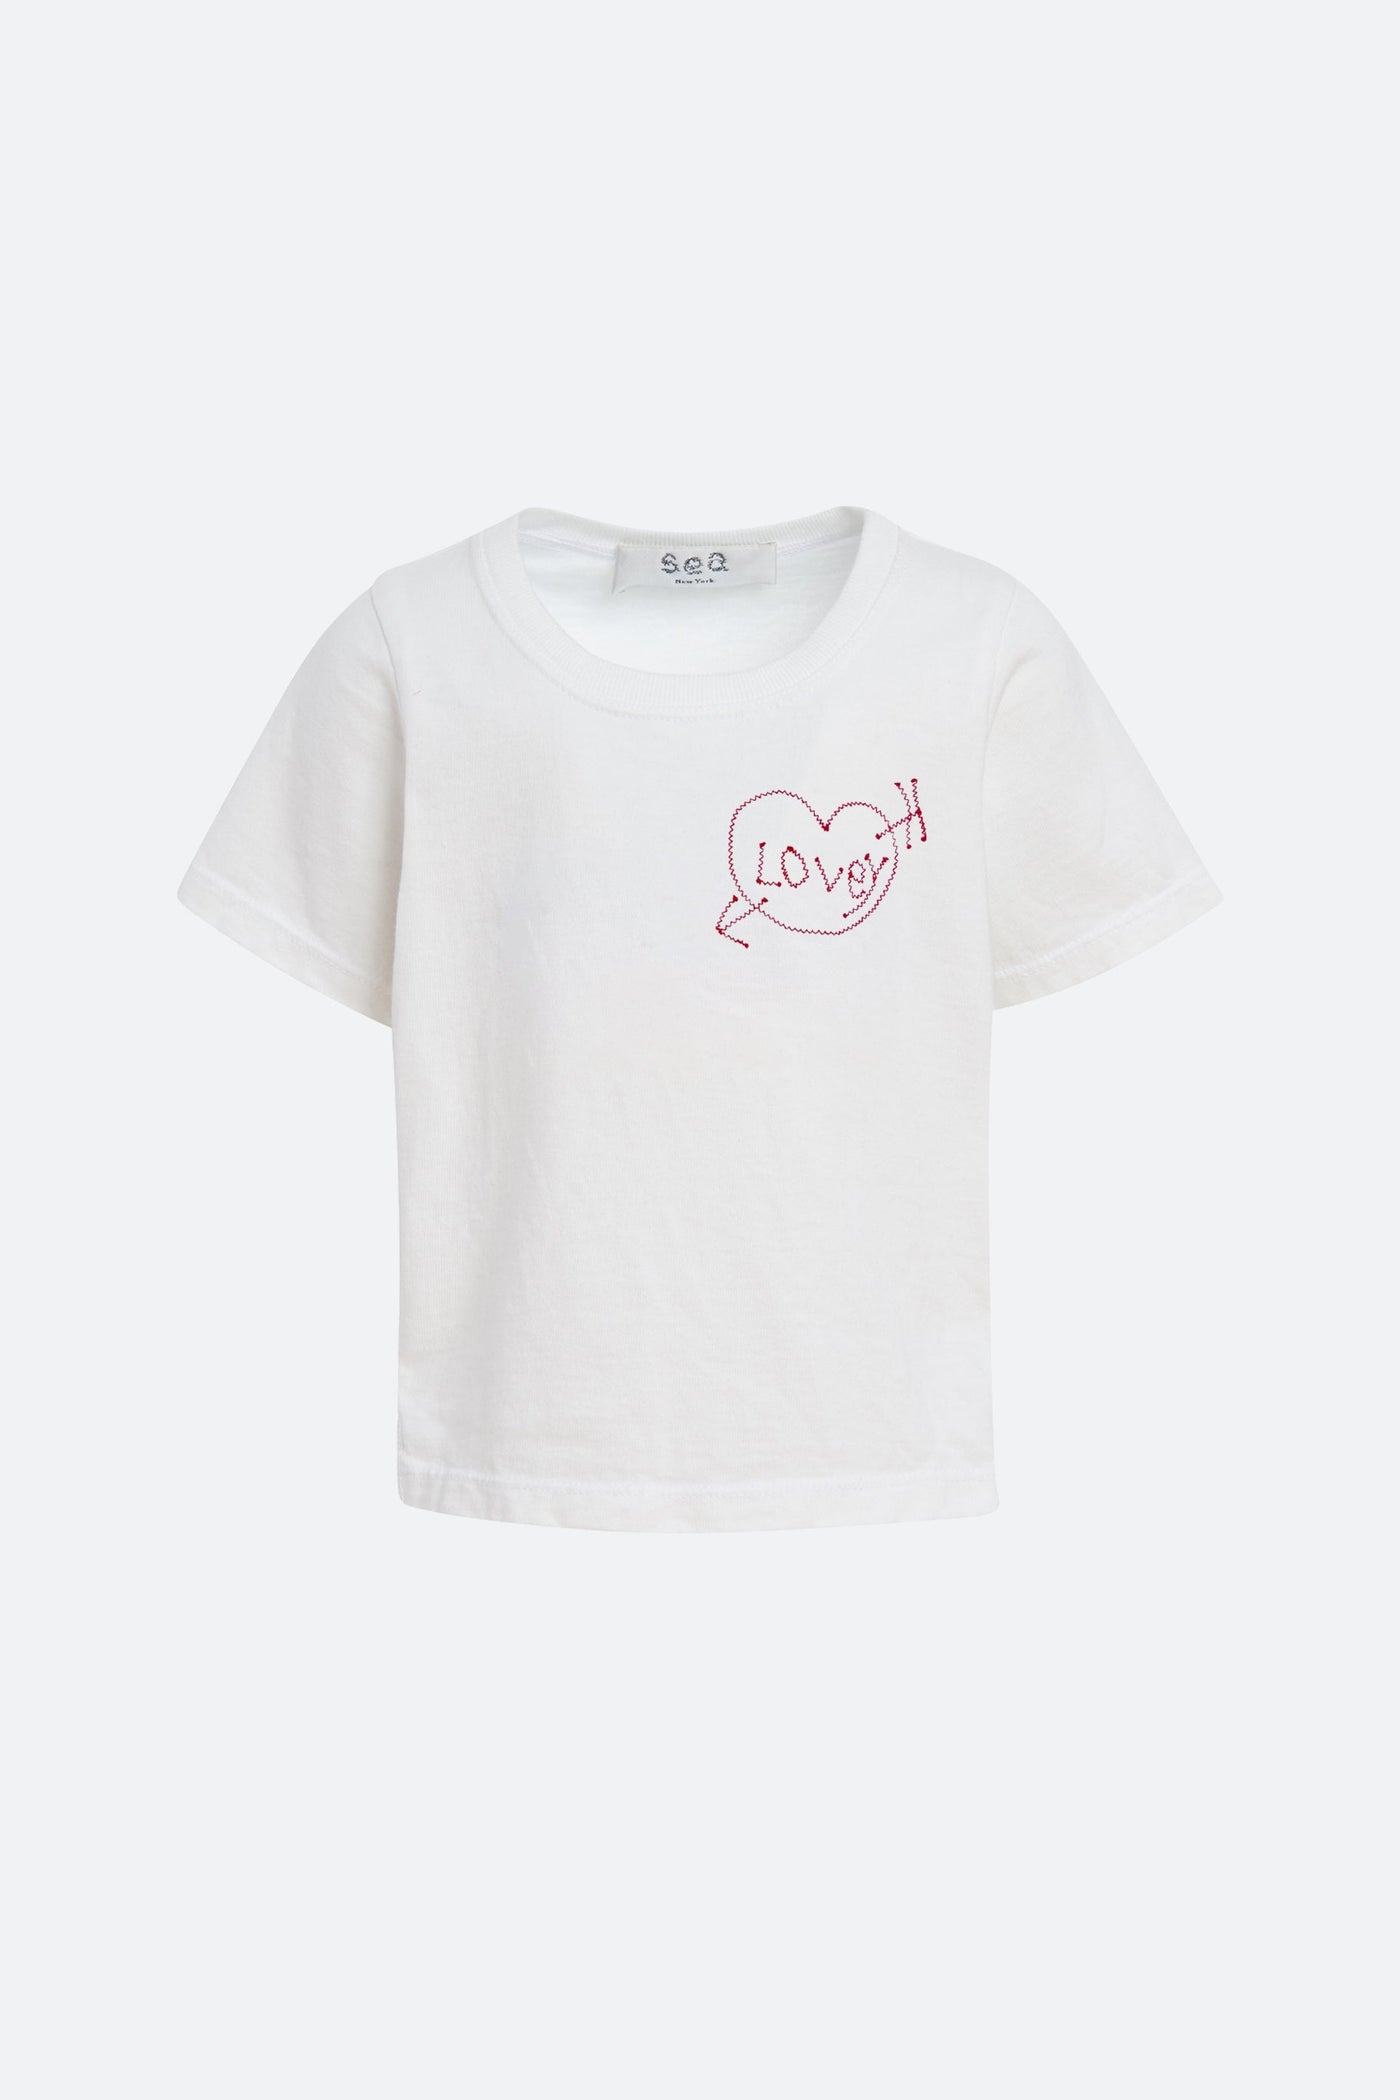 Lovey Kids T-shirt - White